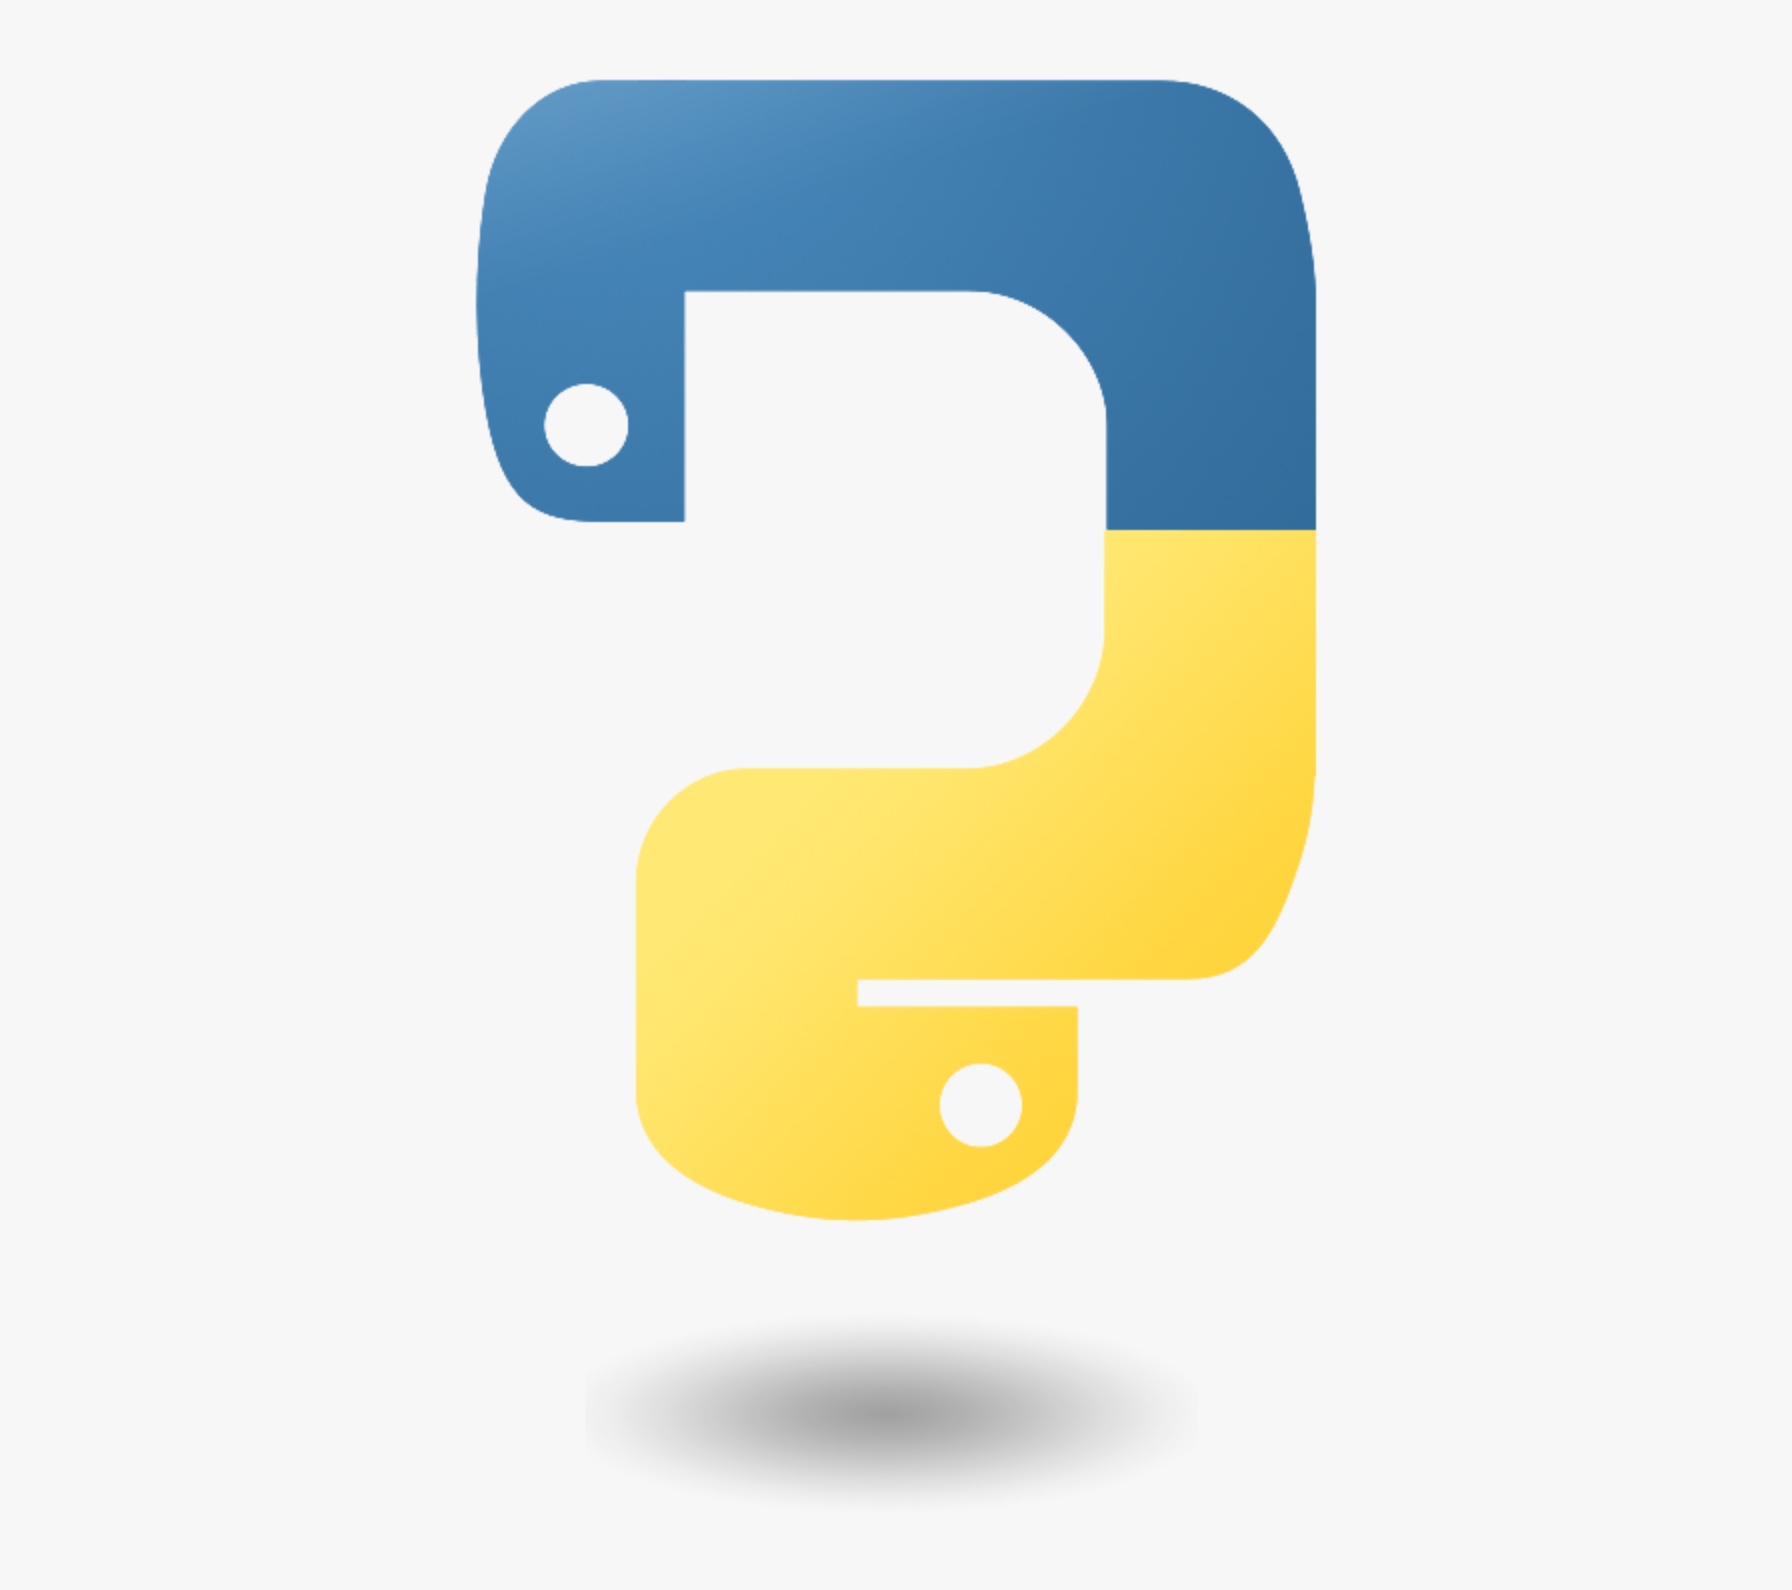 Логотип языка питон. Язык програмирония пион логотип. Значок Python. Python язык программирования лого. Питон язык программирования лого.